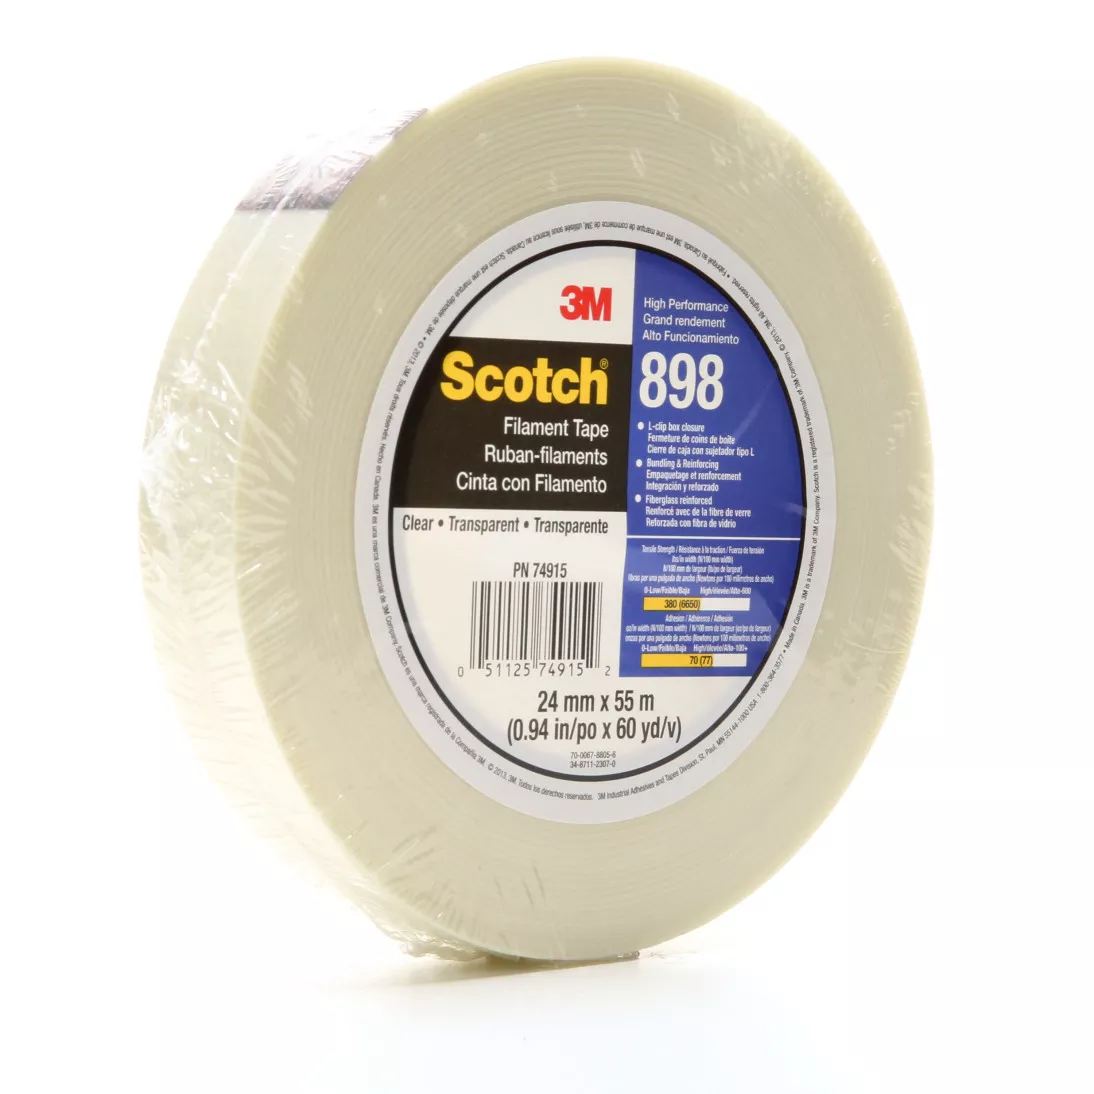 Scotch® Filament Tape 898, Clear, 24 mm x 330 m, 6.6 mil, 6 rolls per
case